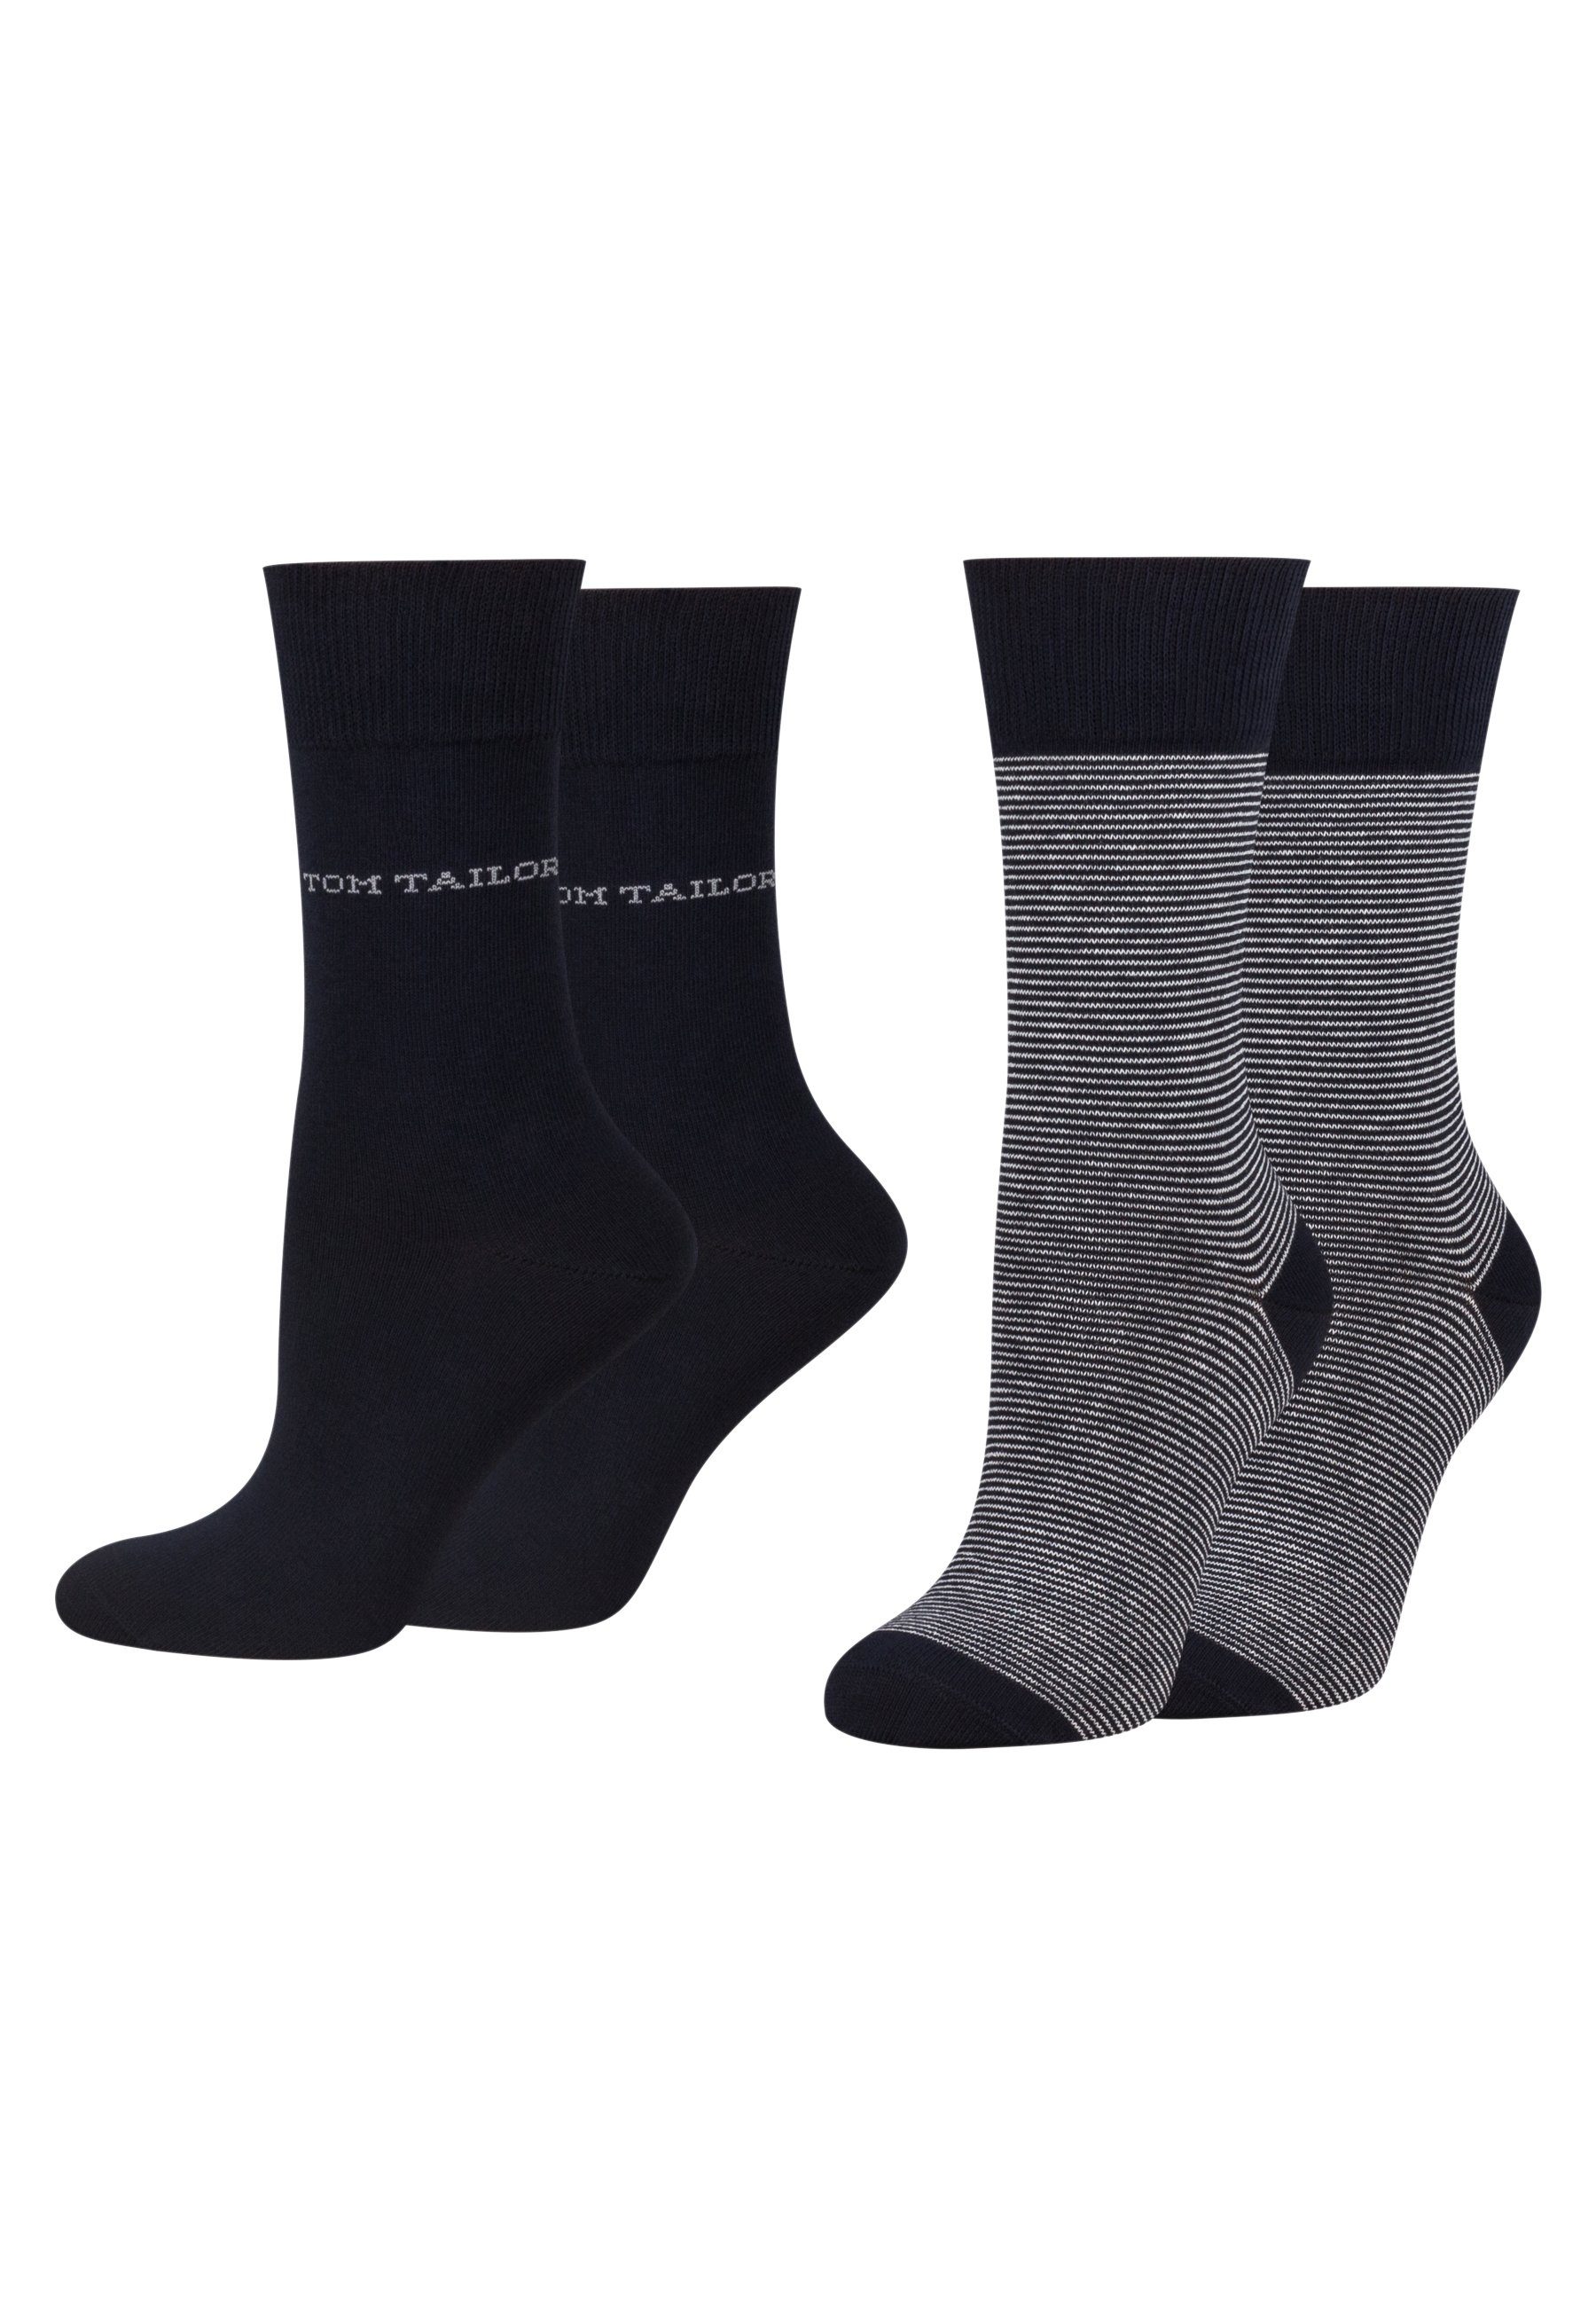 4 Tailor 9521545042_4 TAILOR socks Socken TOM navy Paar Tom basic 2er stripe women